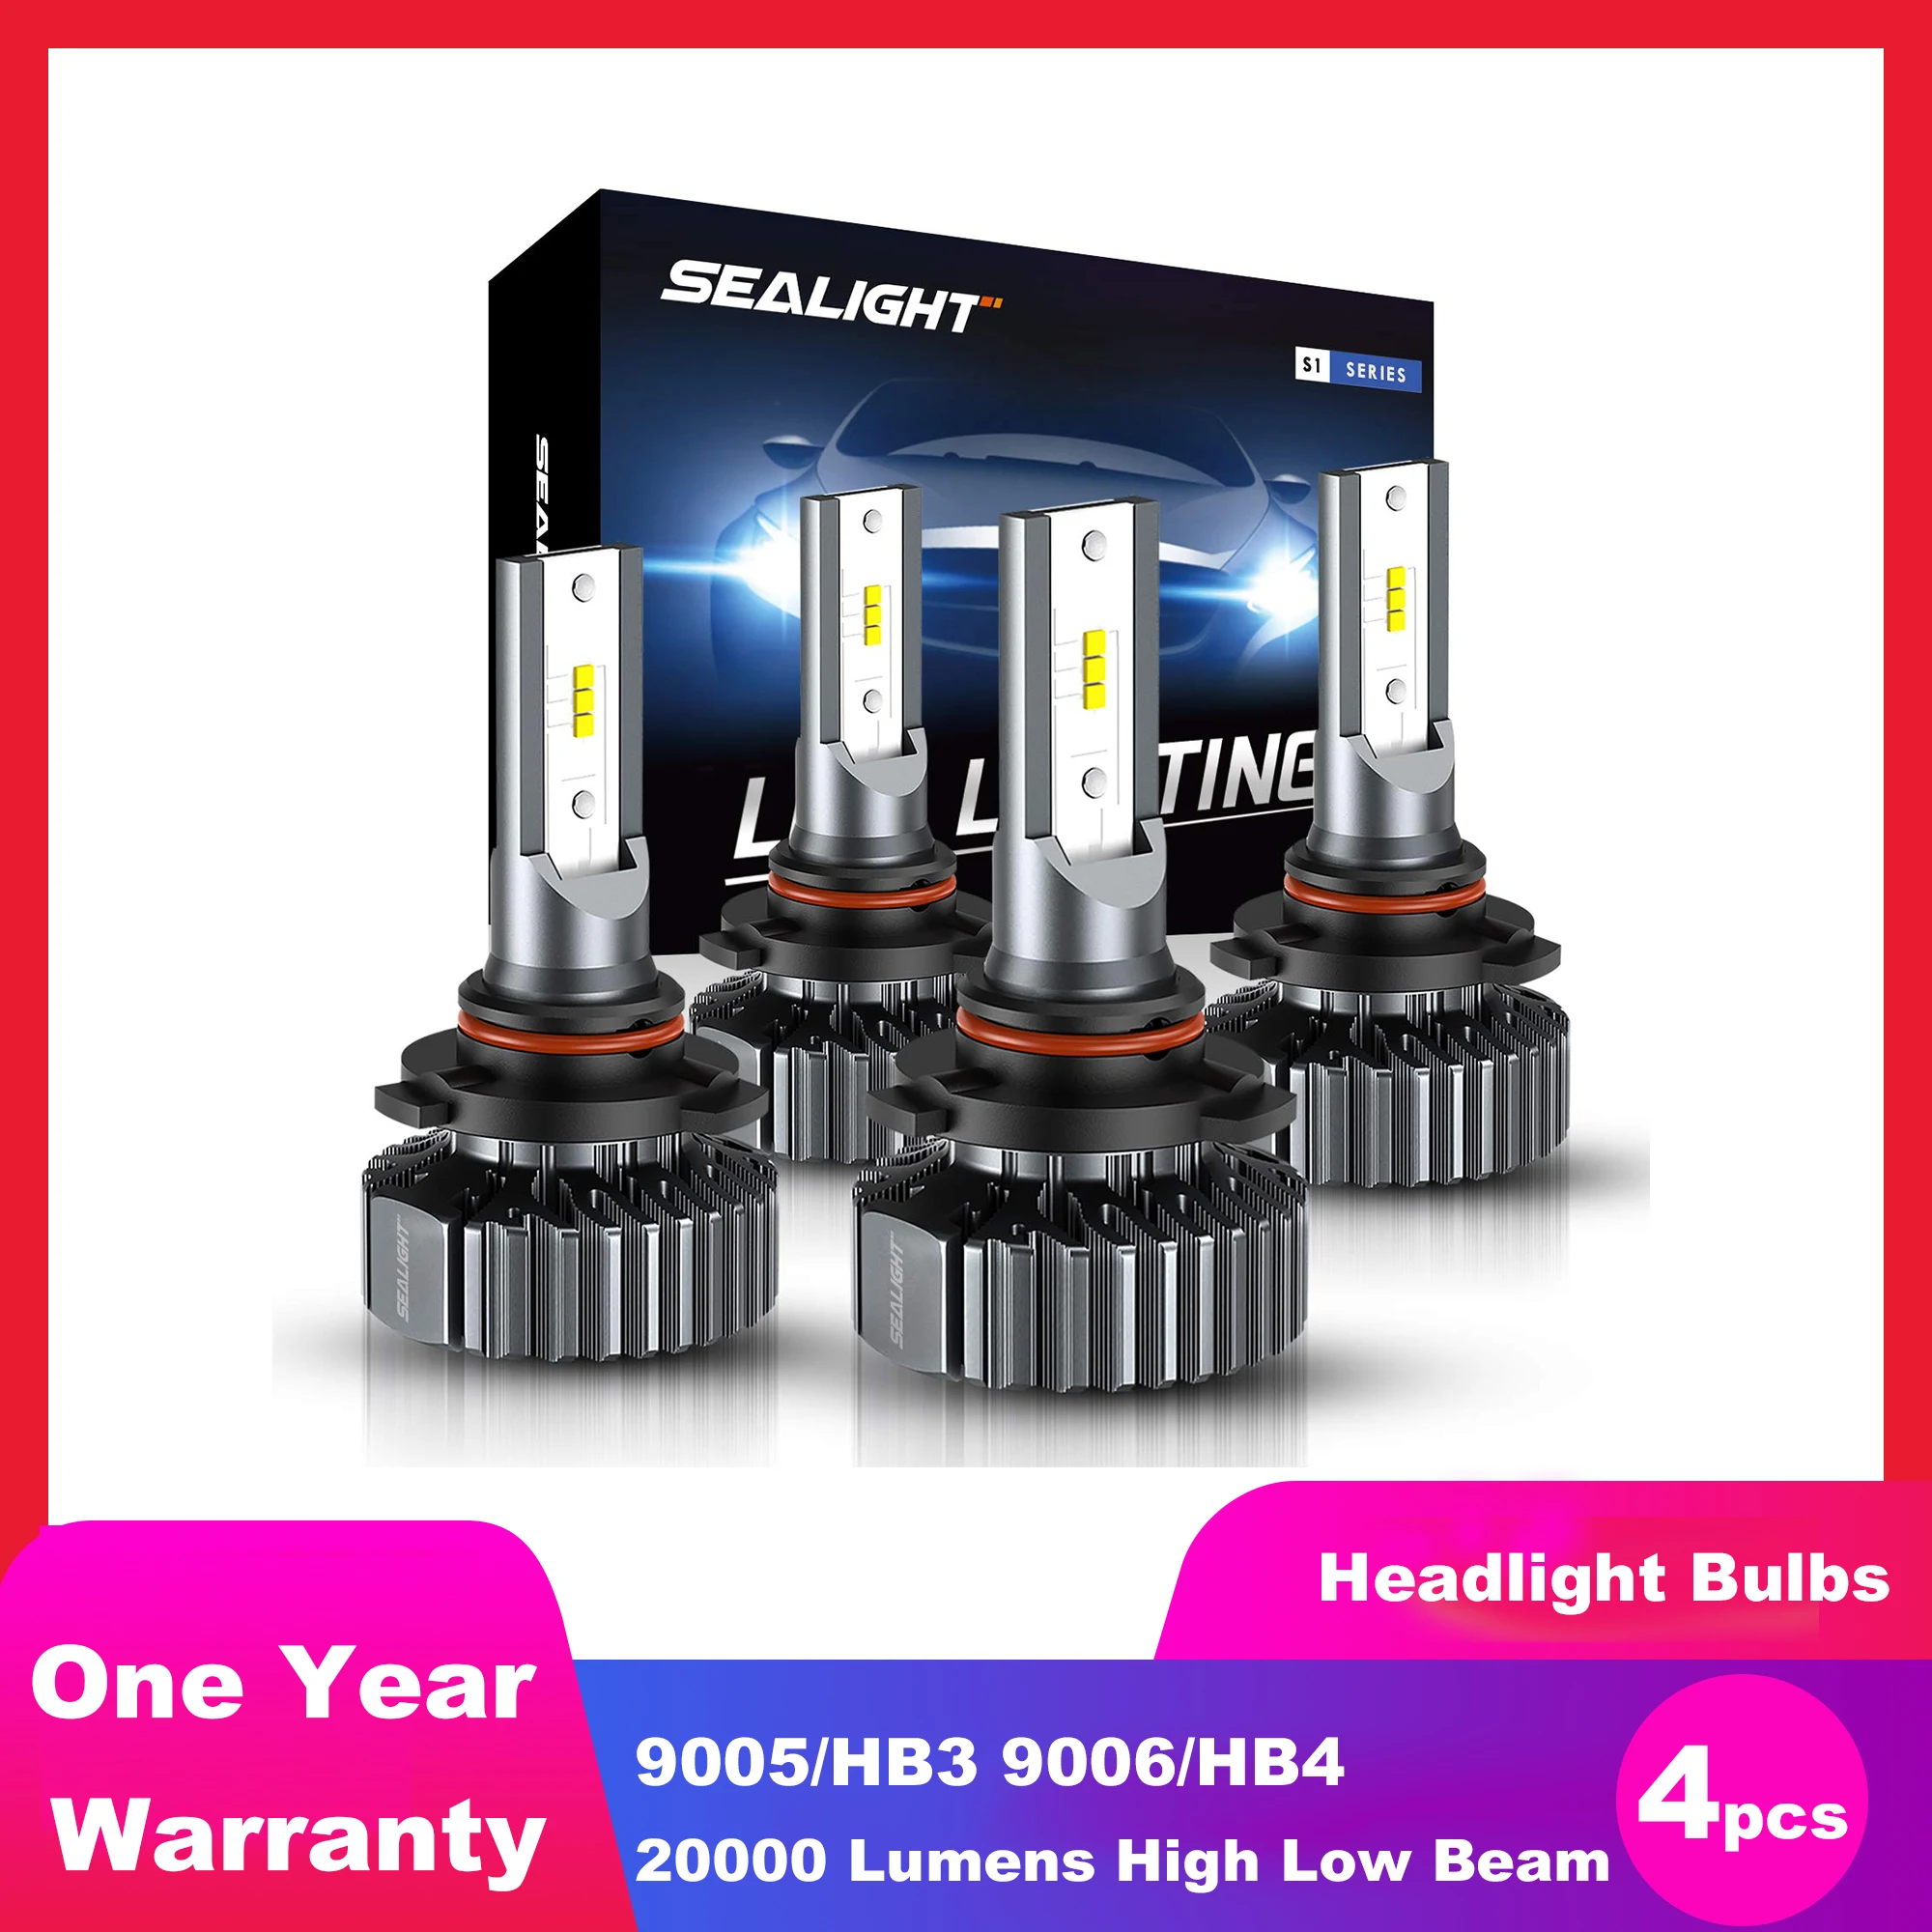 

SEALIGHT 4pcs 9005/HB3 9006/HB4 LED Headlight Bulbs 20000 Lumens High Low Beam Combo Conversion Kit Hi/Lo 6000K White Lights